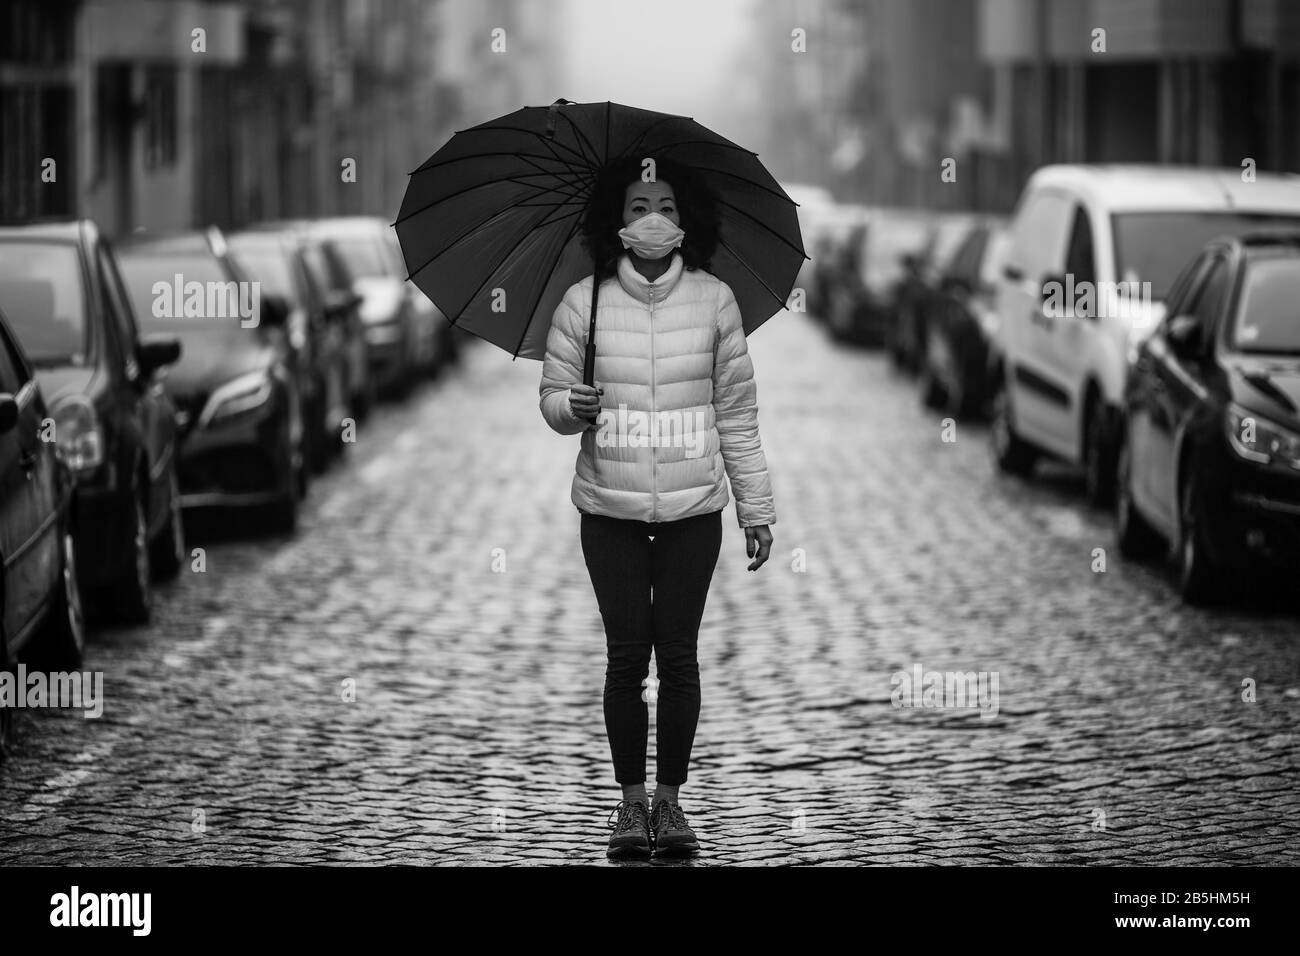 Asian Woman in antiviraler Maske steht inmitten einer menschenleeren Straße in Foggy. Schwarzweißfoto. Stockfoto